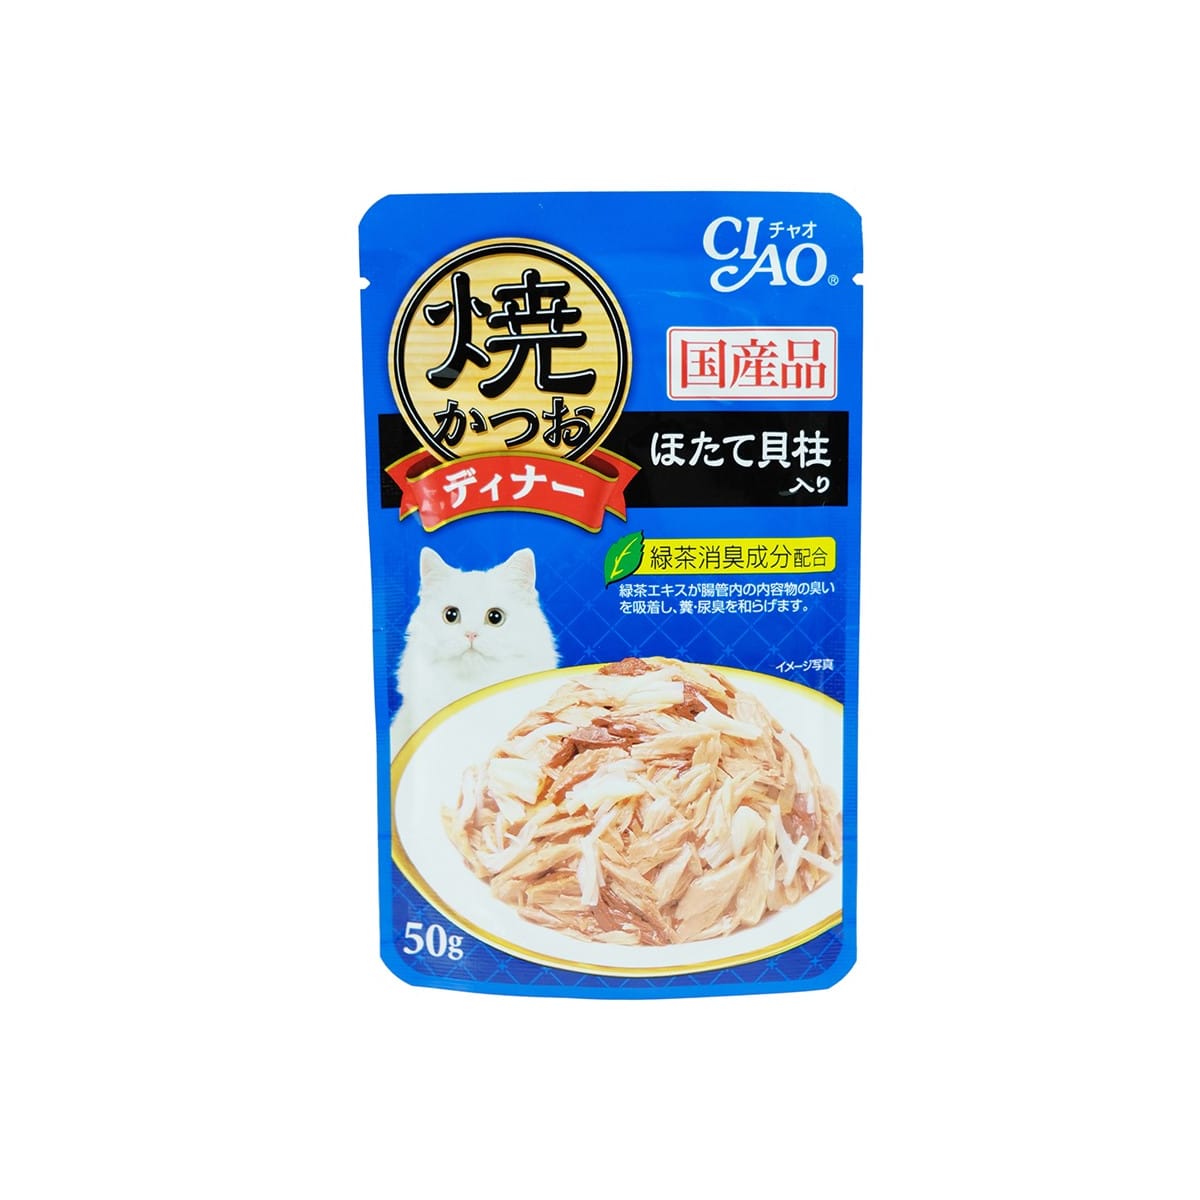 Ciao เชาว์ อาหารเปียก แบบเพ้าช์ สำหรับแมว สูตรทูน่าย่างในเยลลี่ รสหอยเชลล์ 50 g_1